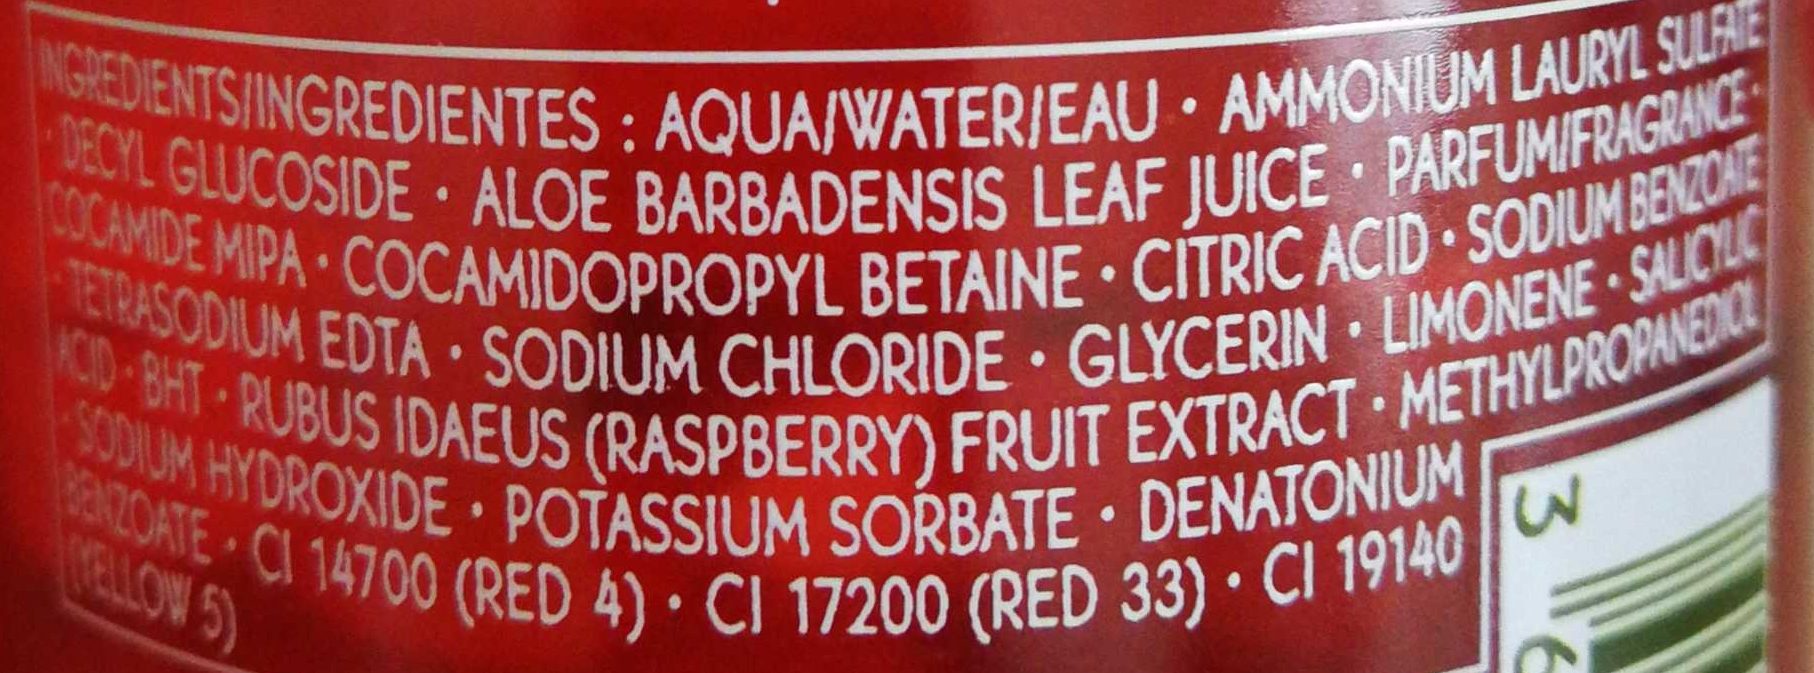 Bain douche énergisant framboise menthe poivrée - Ingredients - fr